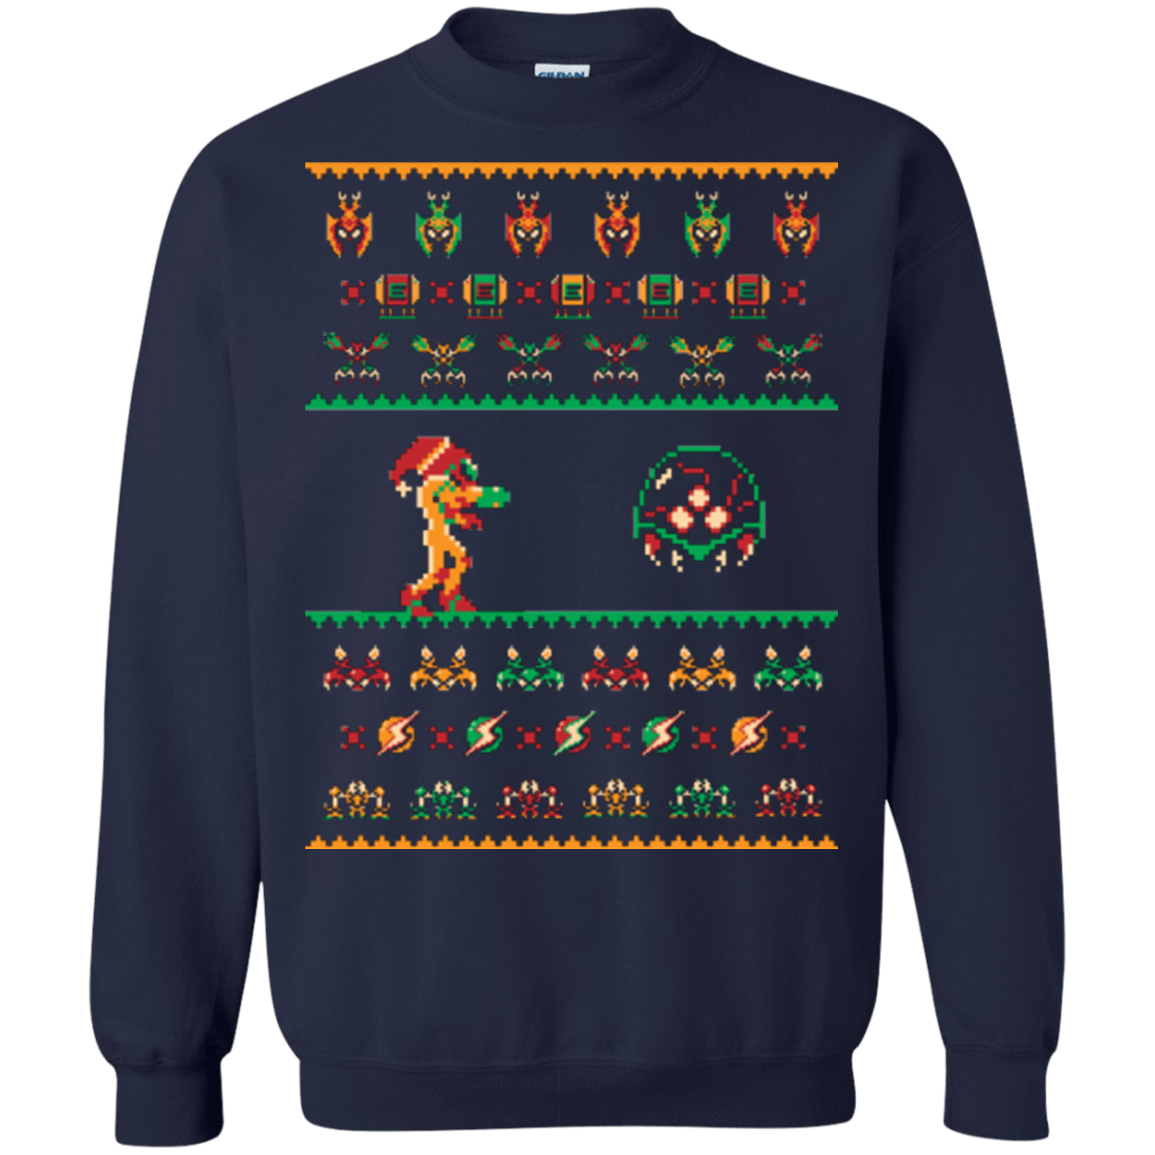 Sweatshirts Navy / Small We Wish You A Metroid Christmas Crewneck Sweatshirt